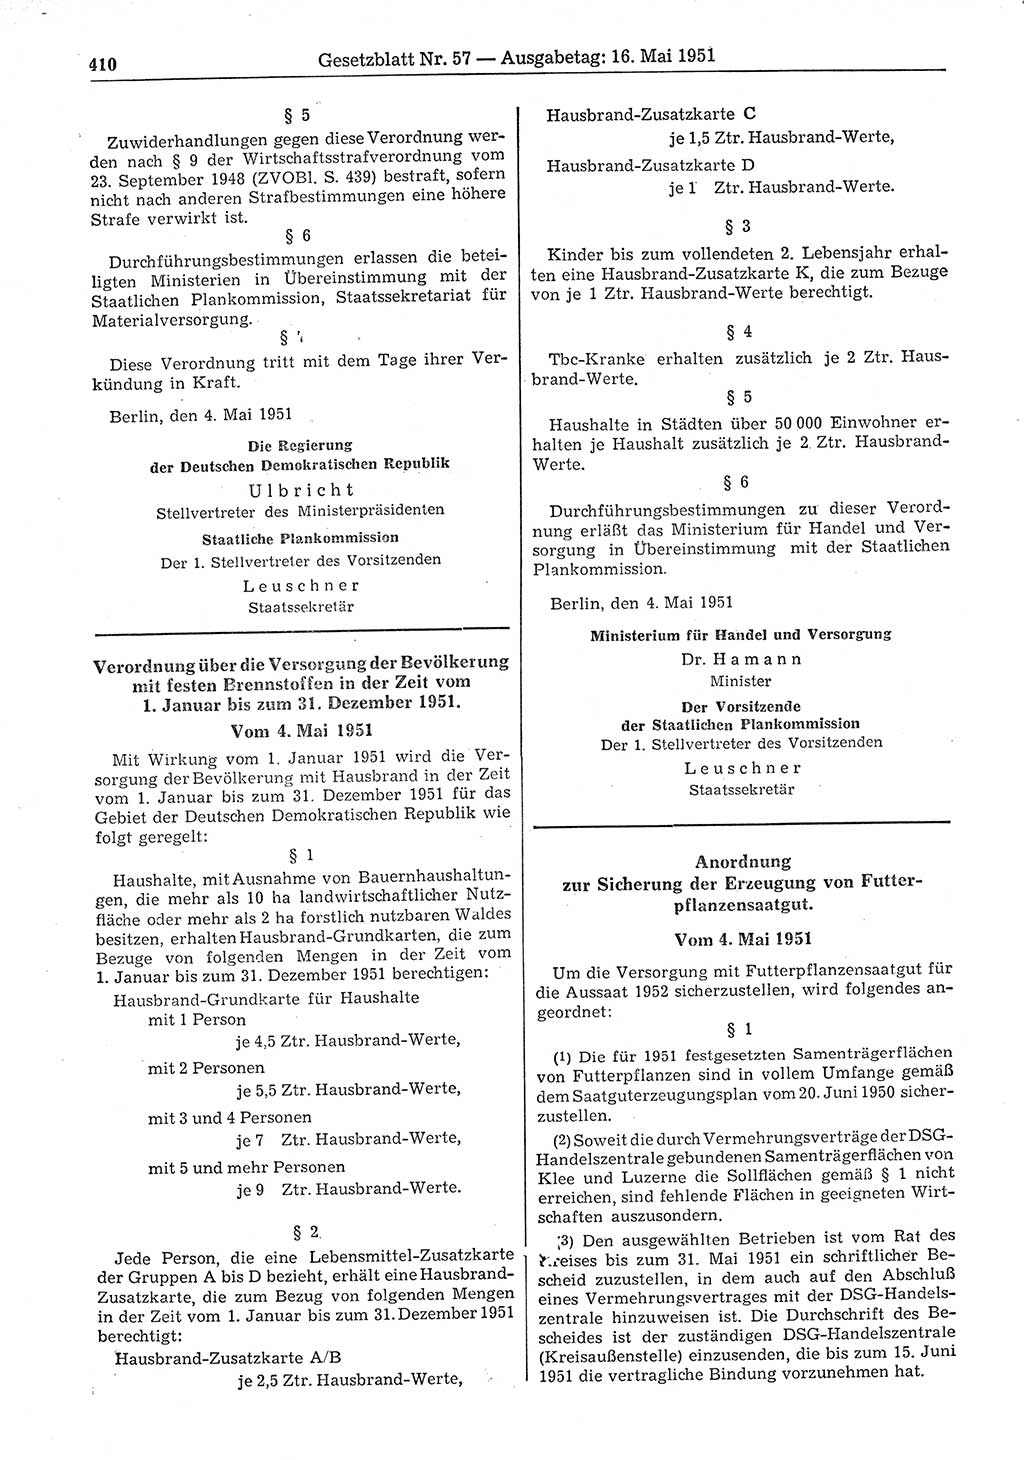 Gesetzblatt (GBl.) der Deutschen Demokratischen Republik (DDR) 1951, Seite 410 (GBl. DDR 1951, S. 410)